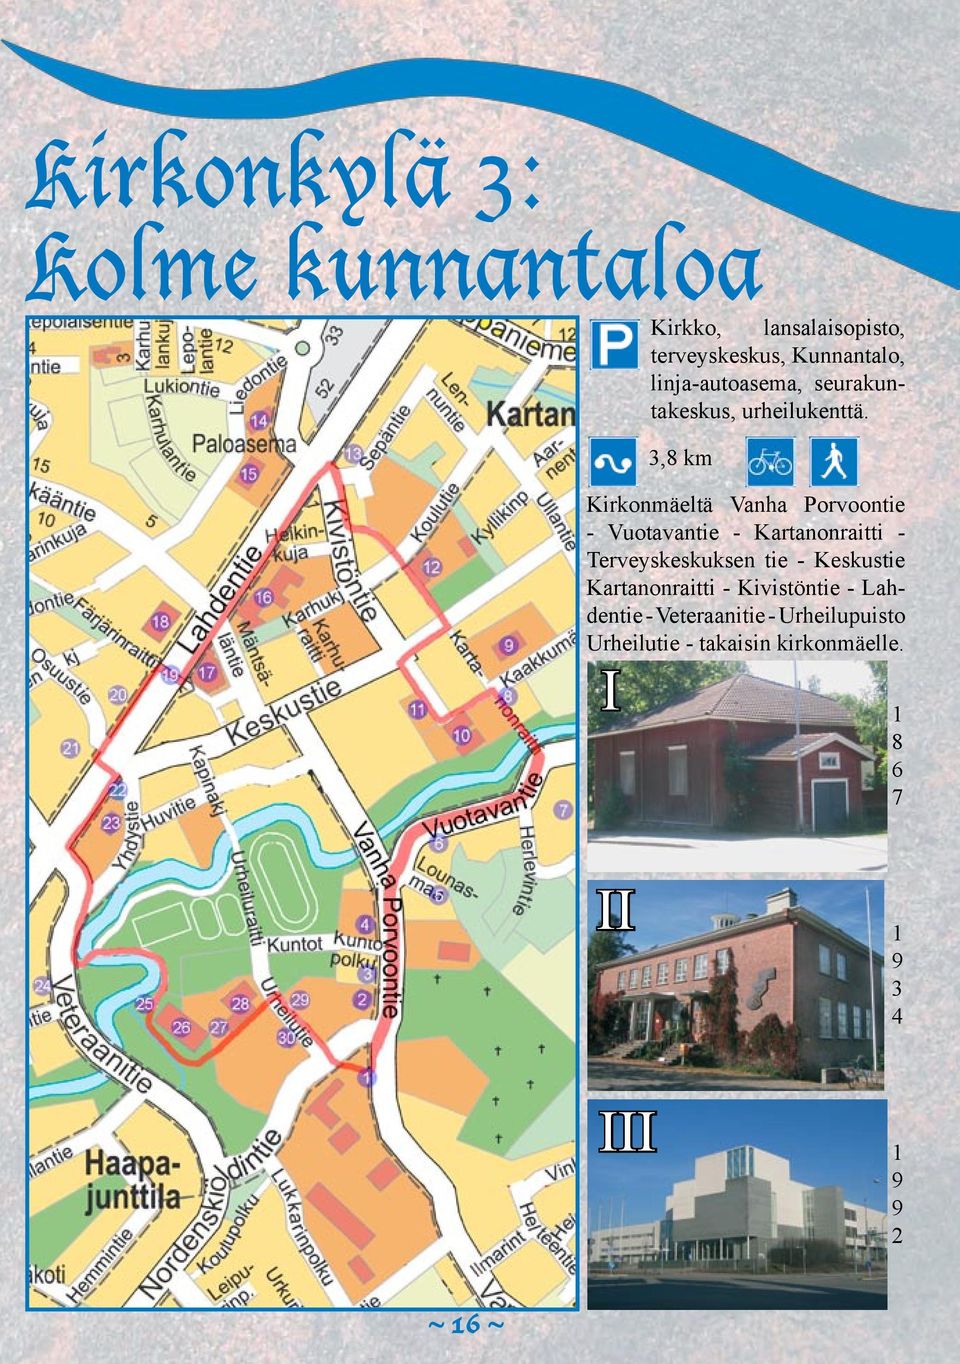 3,8 km Kirkonmäeltä Vanha Porvoontie - Vuotavantie - Kartanonraitti - Terveyskeskuksen tie -